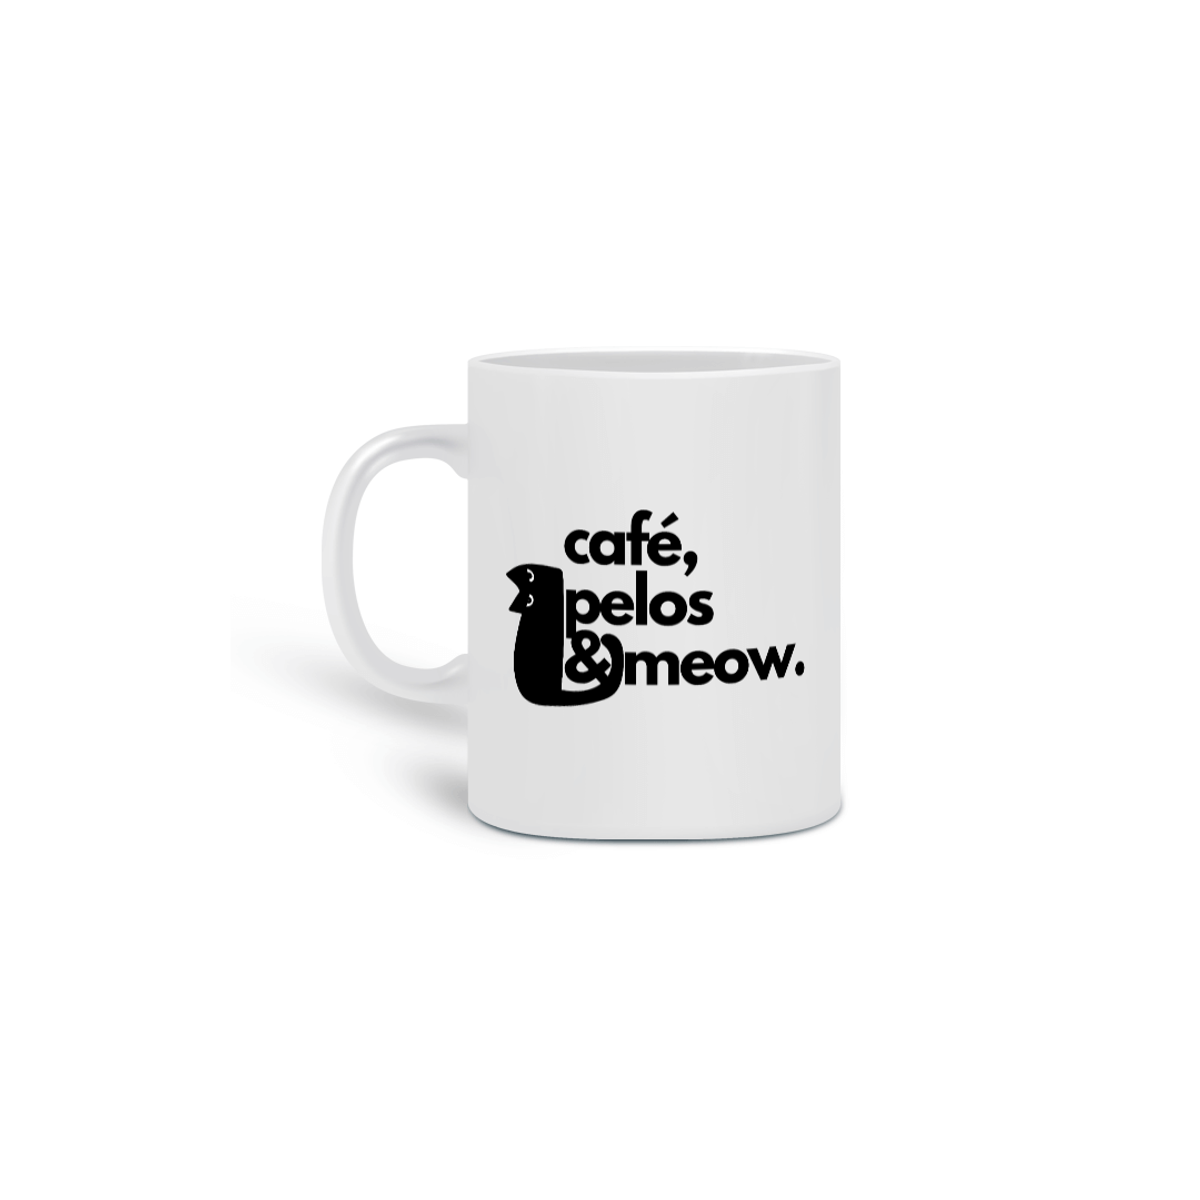 Nome do produto: Caneca café, pelos & meow.